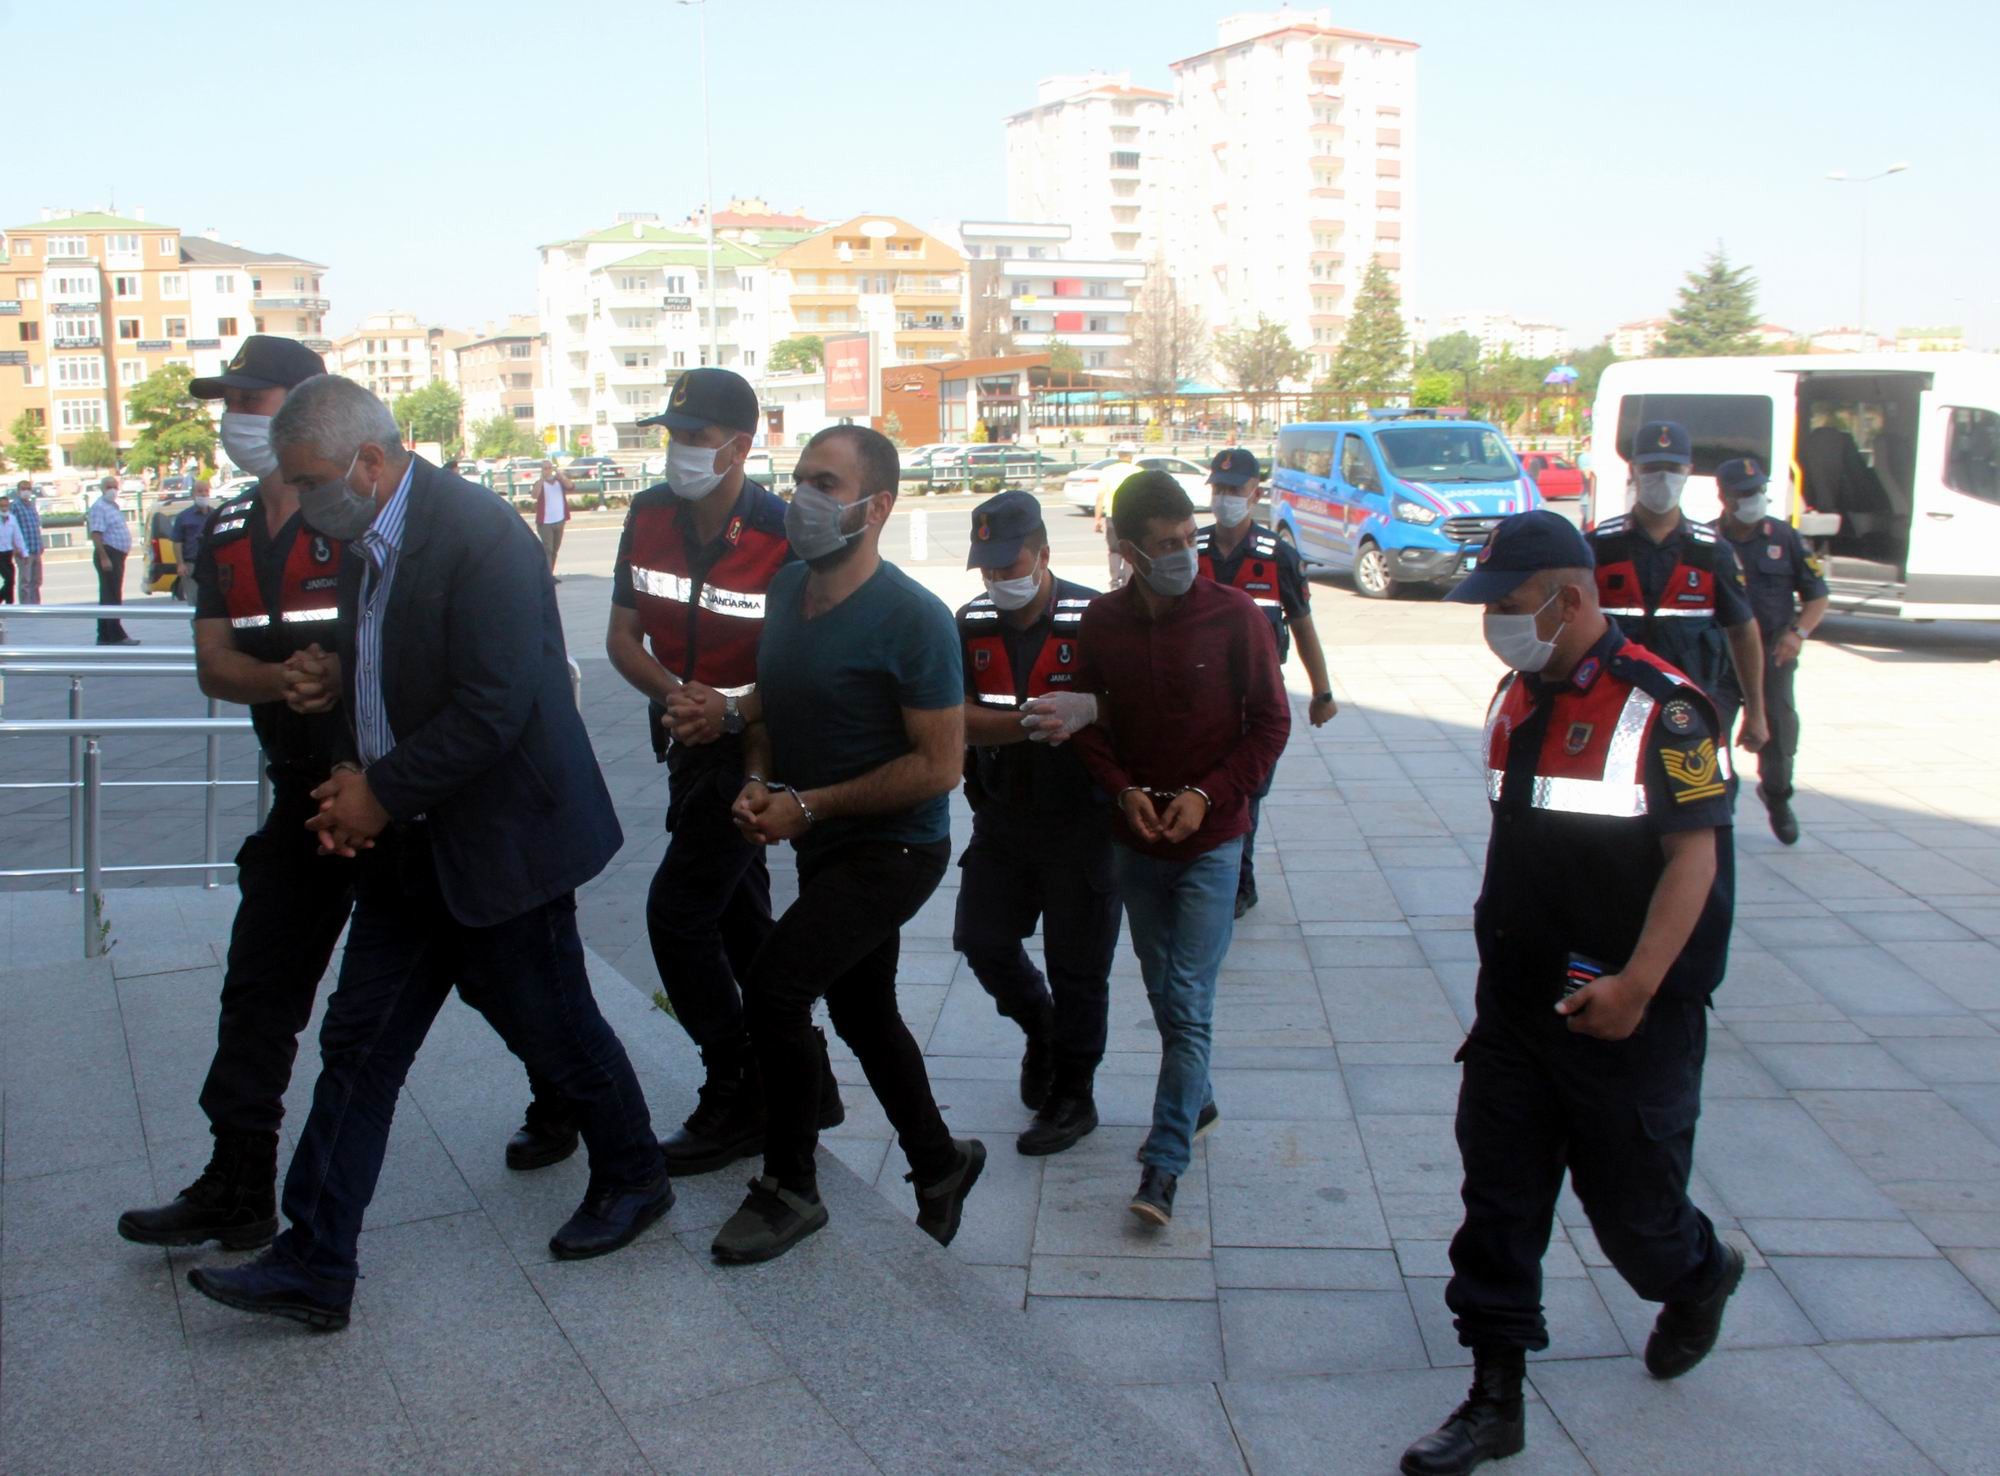 Kayseri merkezli 14 ilde insan kaçakçılarına operasyon: 25 gözaltı